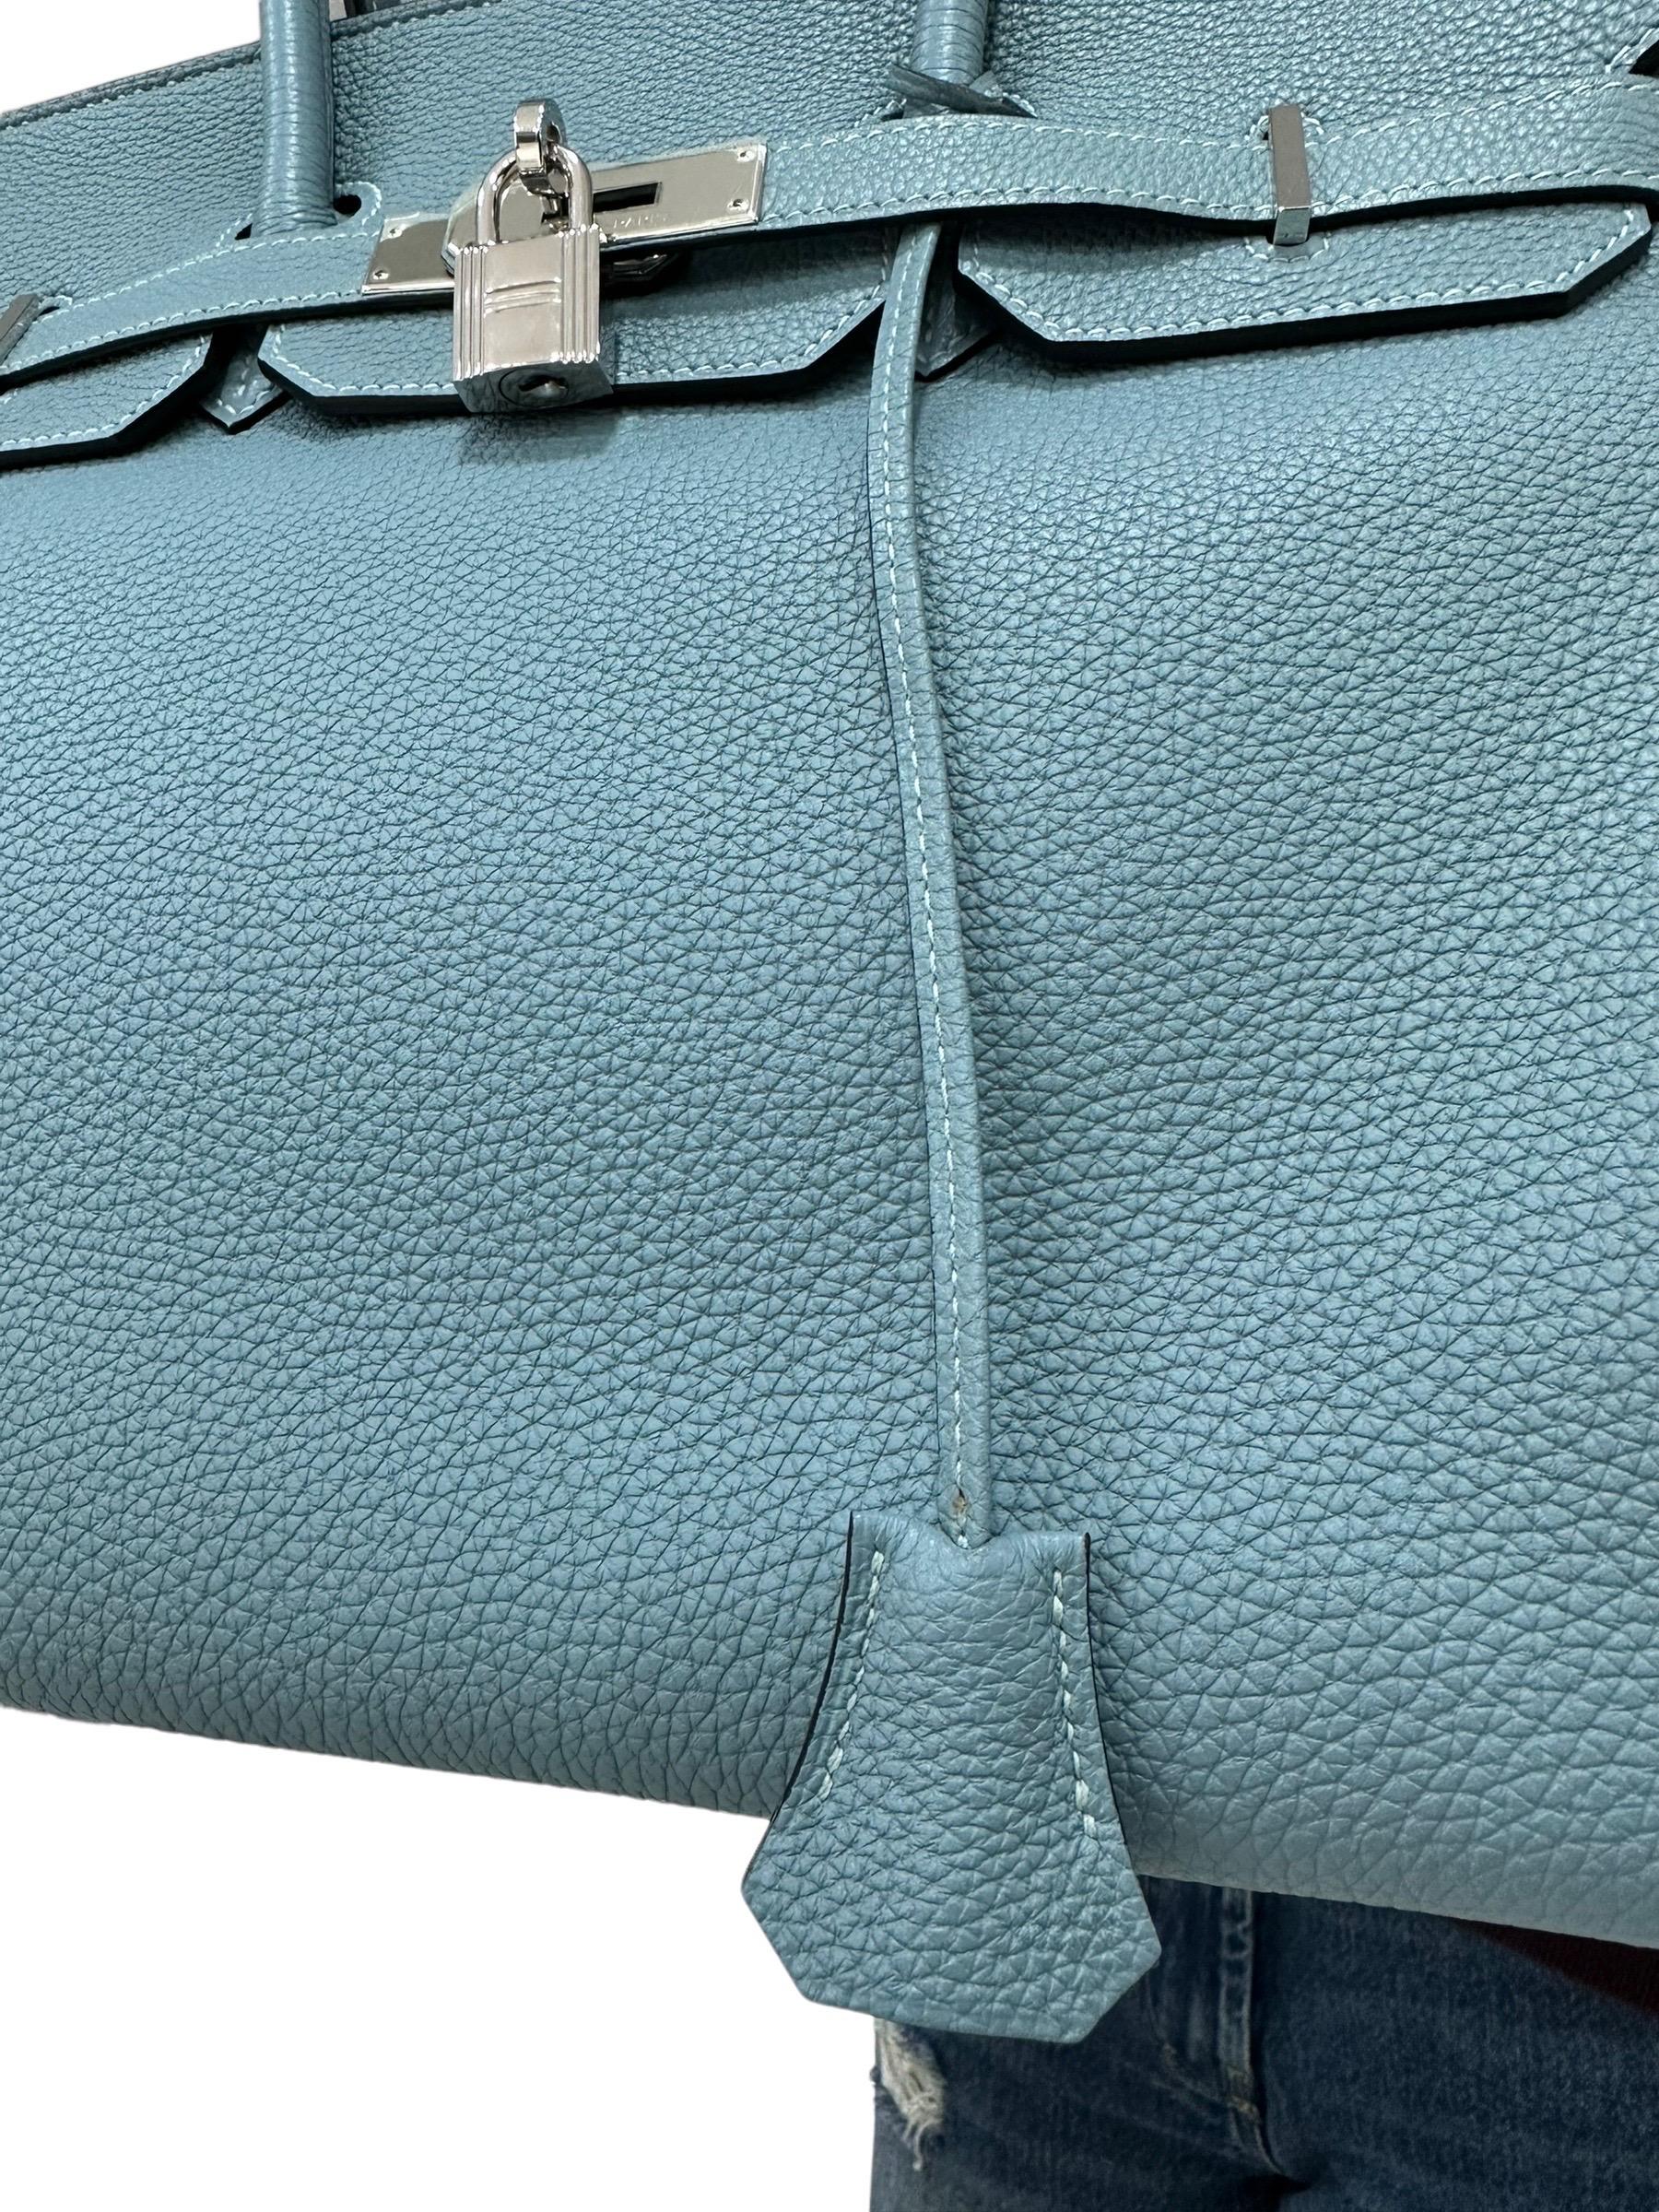 2009 Hermès Birkin 35 Togo Leather Ciel Top Handle Bag For Sale 13